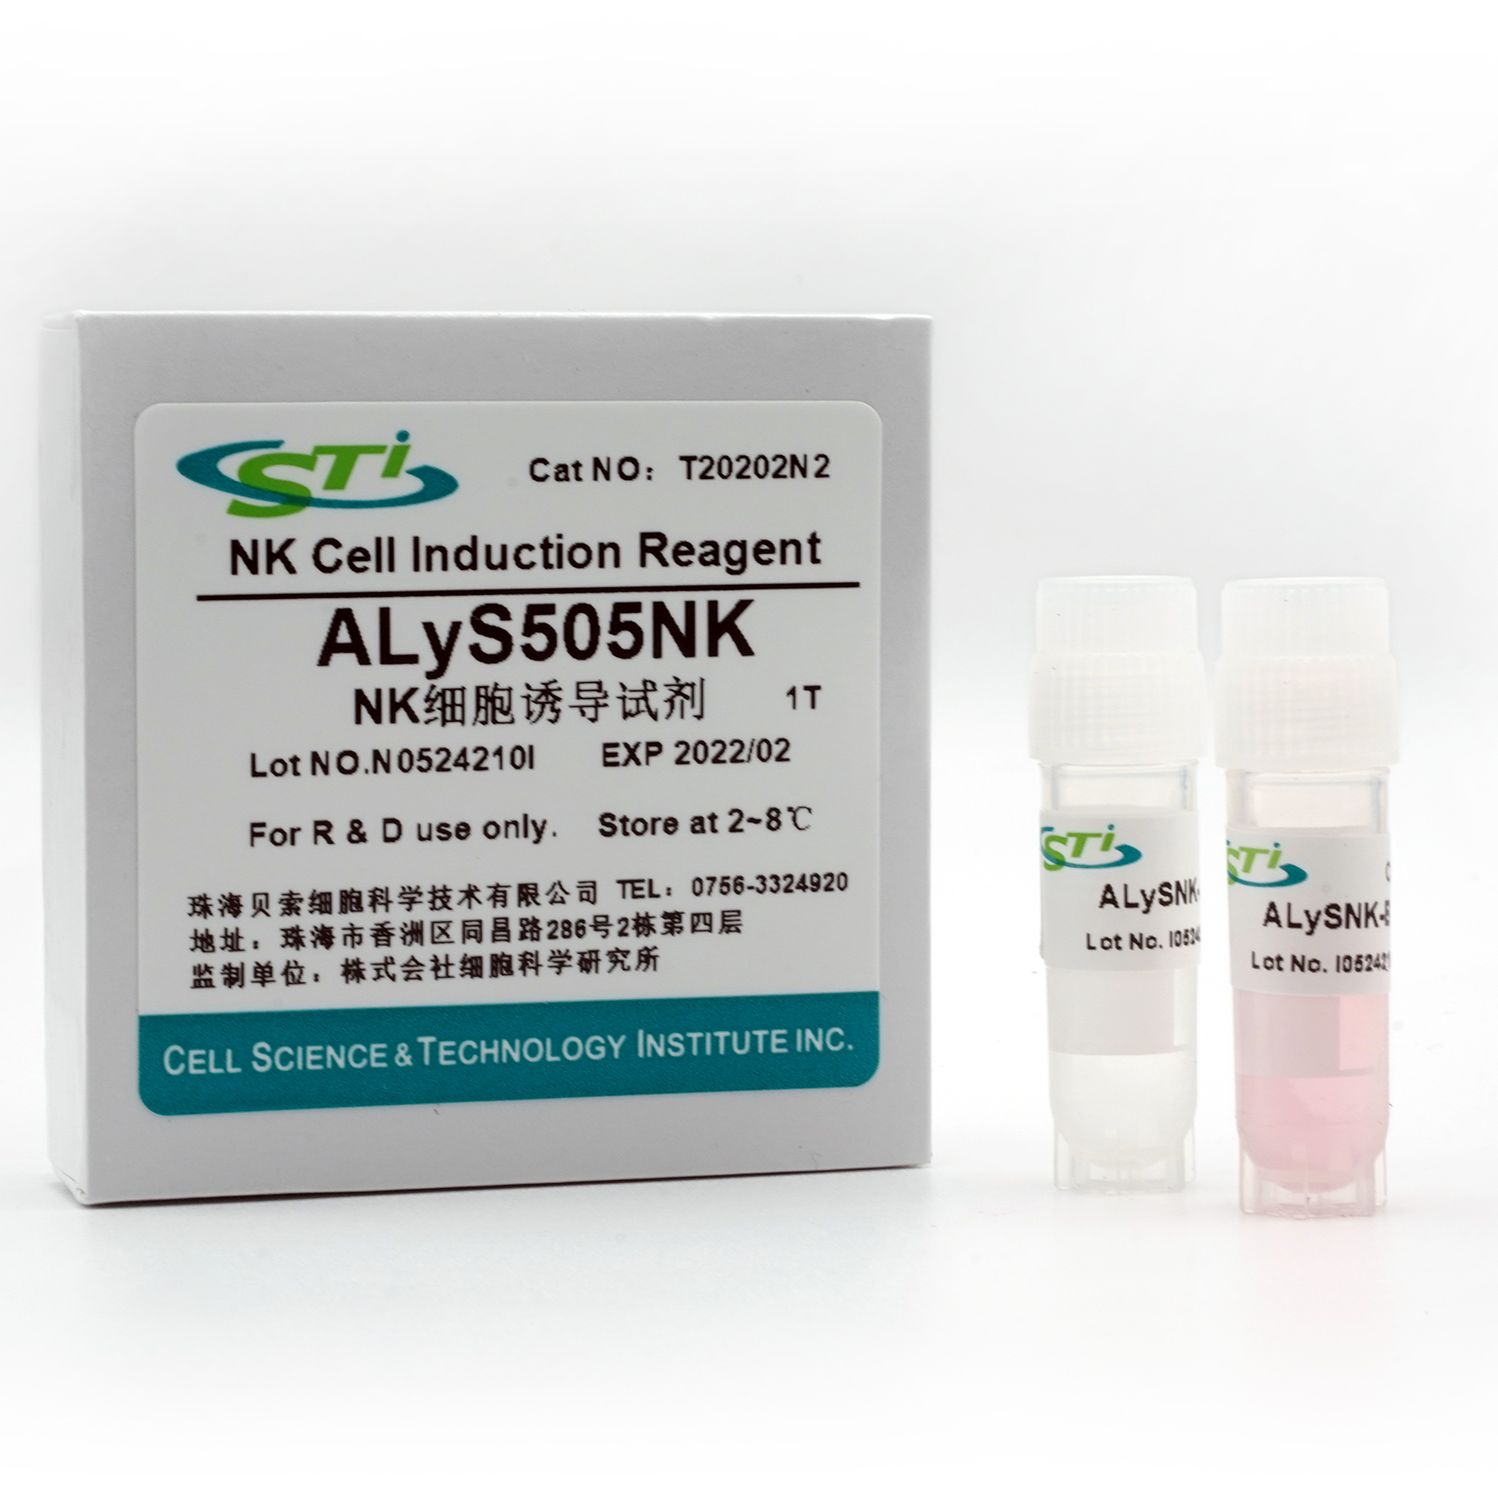 貝索細胞/CSTI  |  NK細胞誘導試劑ALyS505NK